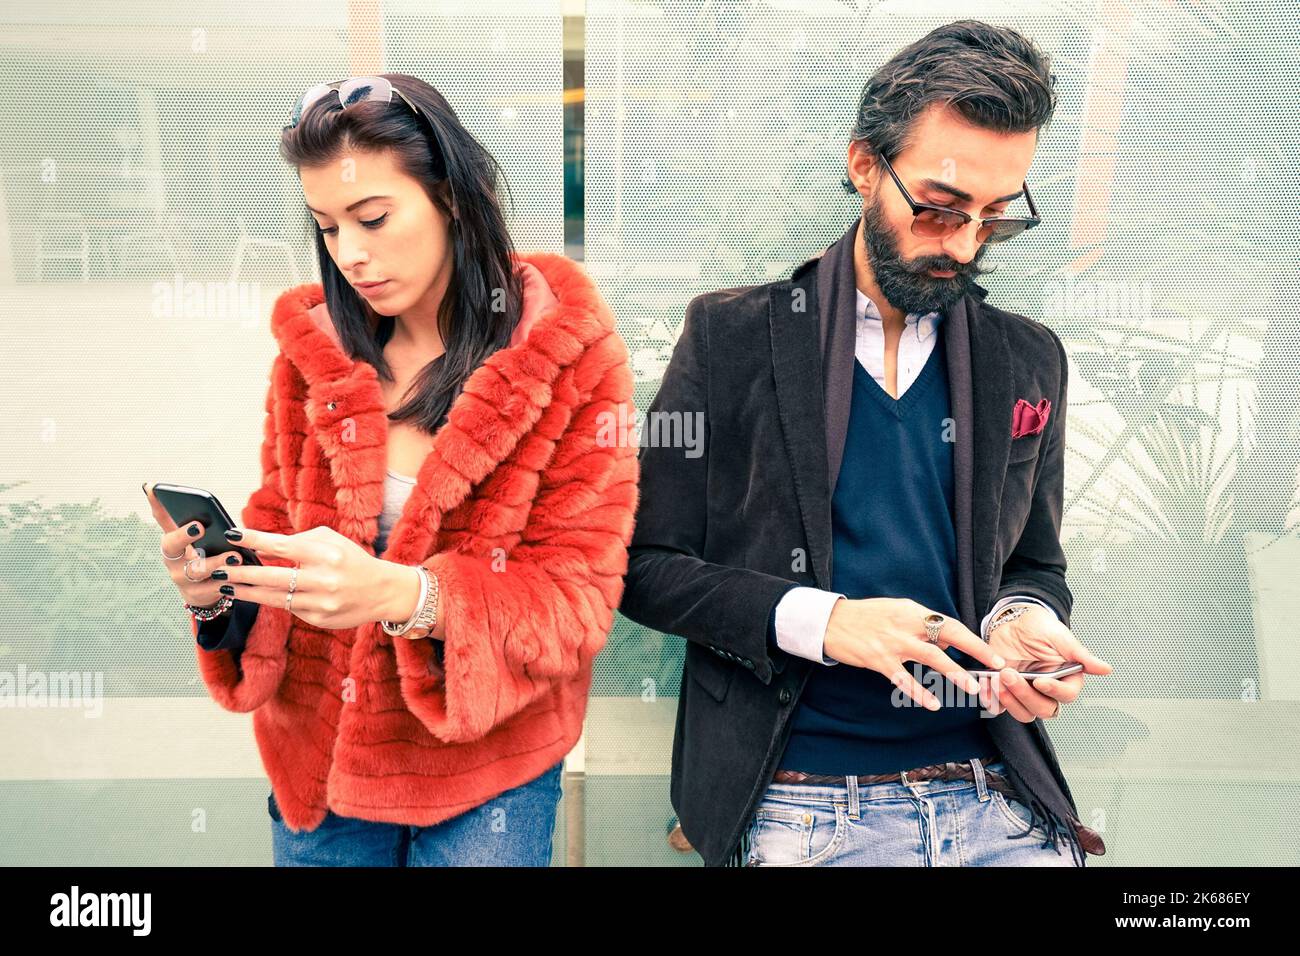 Hipster-Paar im traurigen Moment ignorieren einander mit Mobiltelefonen - Konzept der Apathie Traurigkeit süchtig nach neuen Technologien - Freund und Freundin Stockfoto